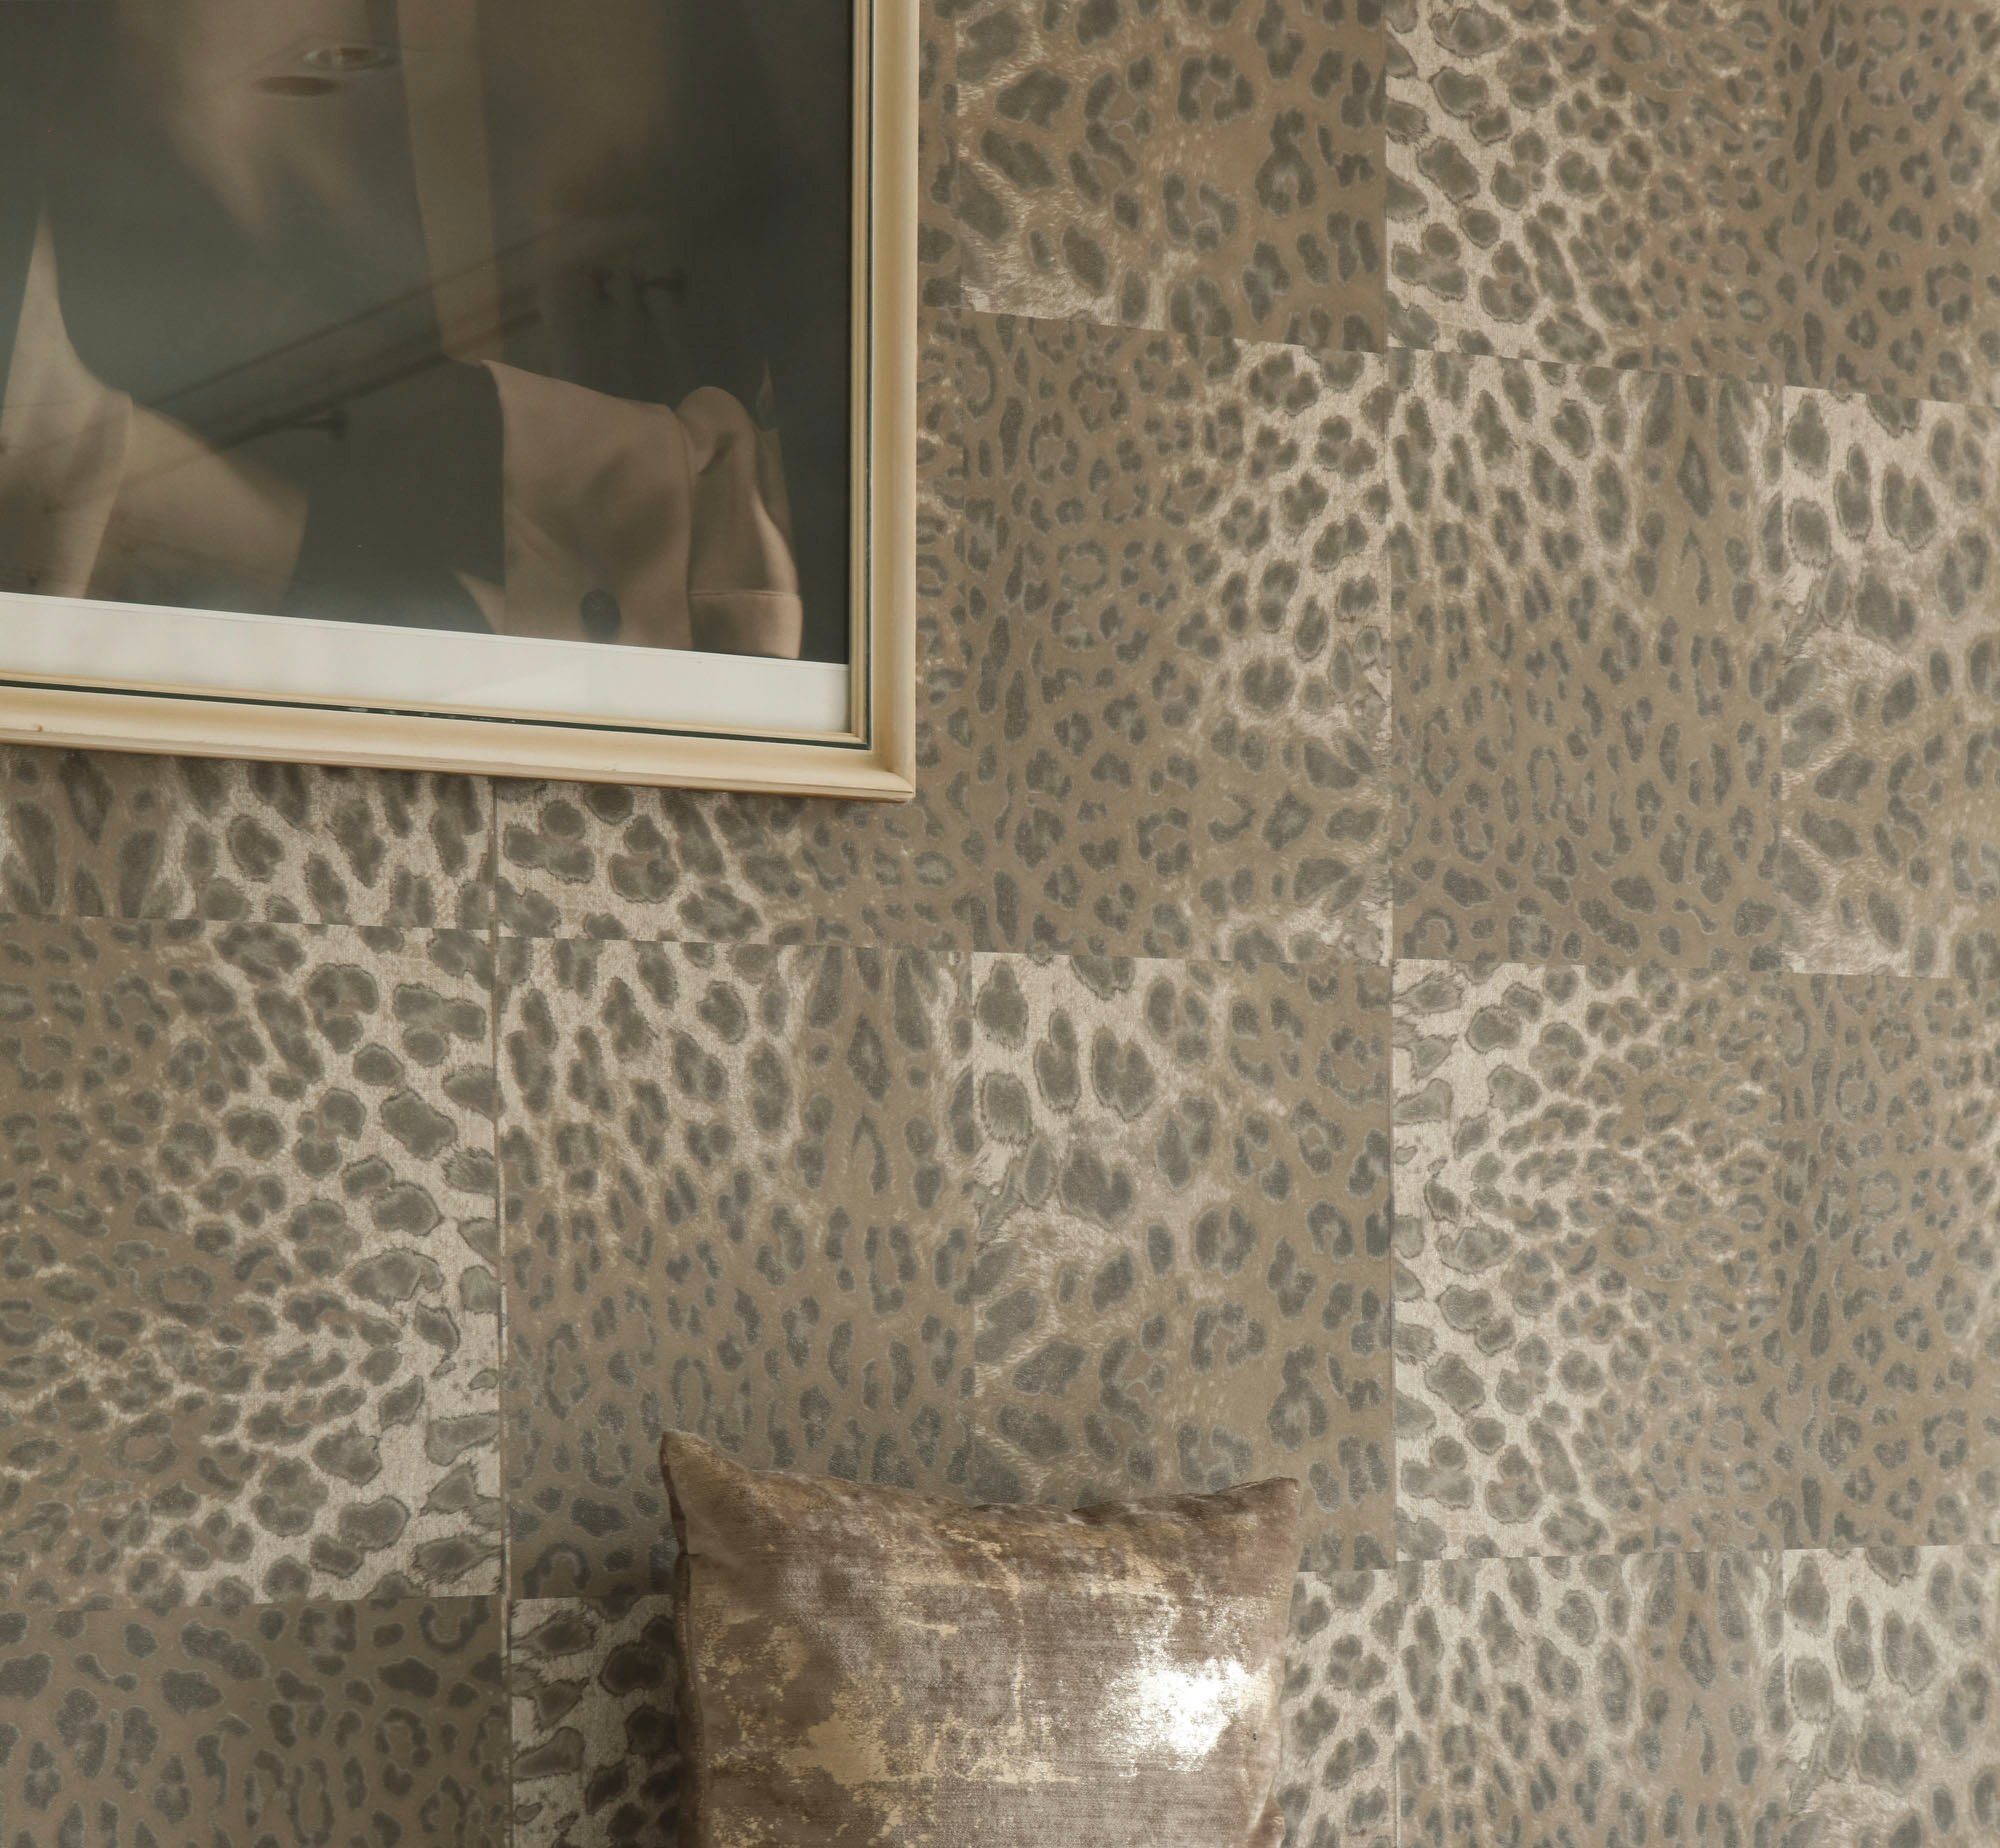 Fellimitat, animal Tapete braun/beige walls strukturiert, Leopardenmuster Desert gemustert, print, Vliestapete Lodge, living